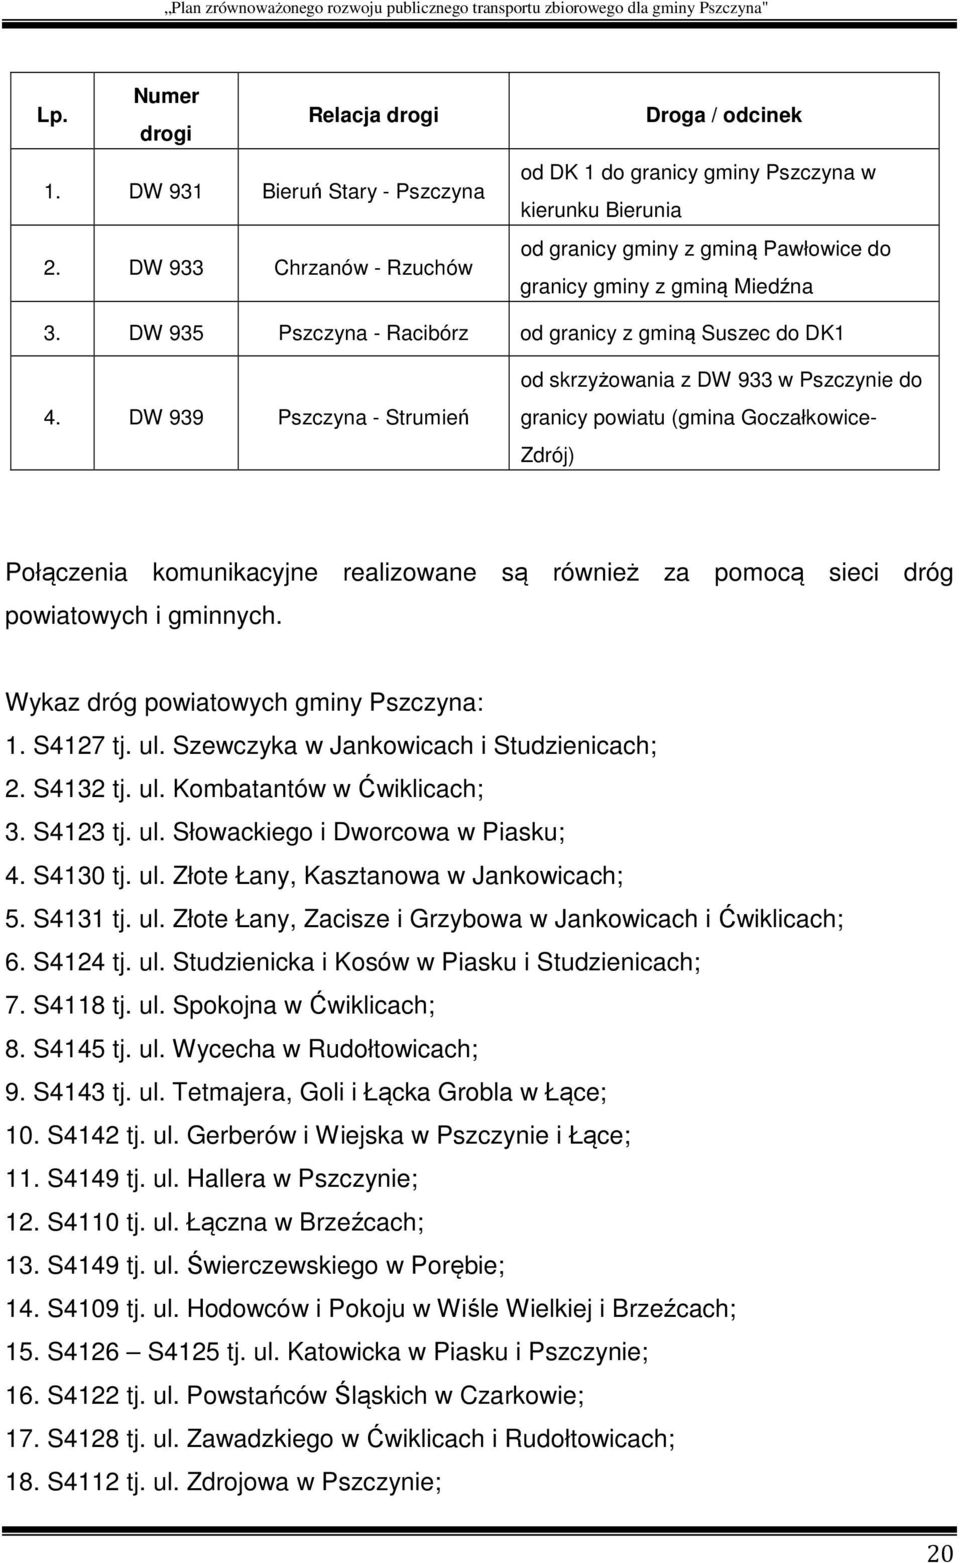 DW 935 Pszczyna - Racibórz od granicy z gminą Suszec do DK1 4.